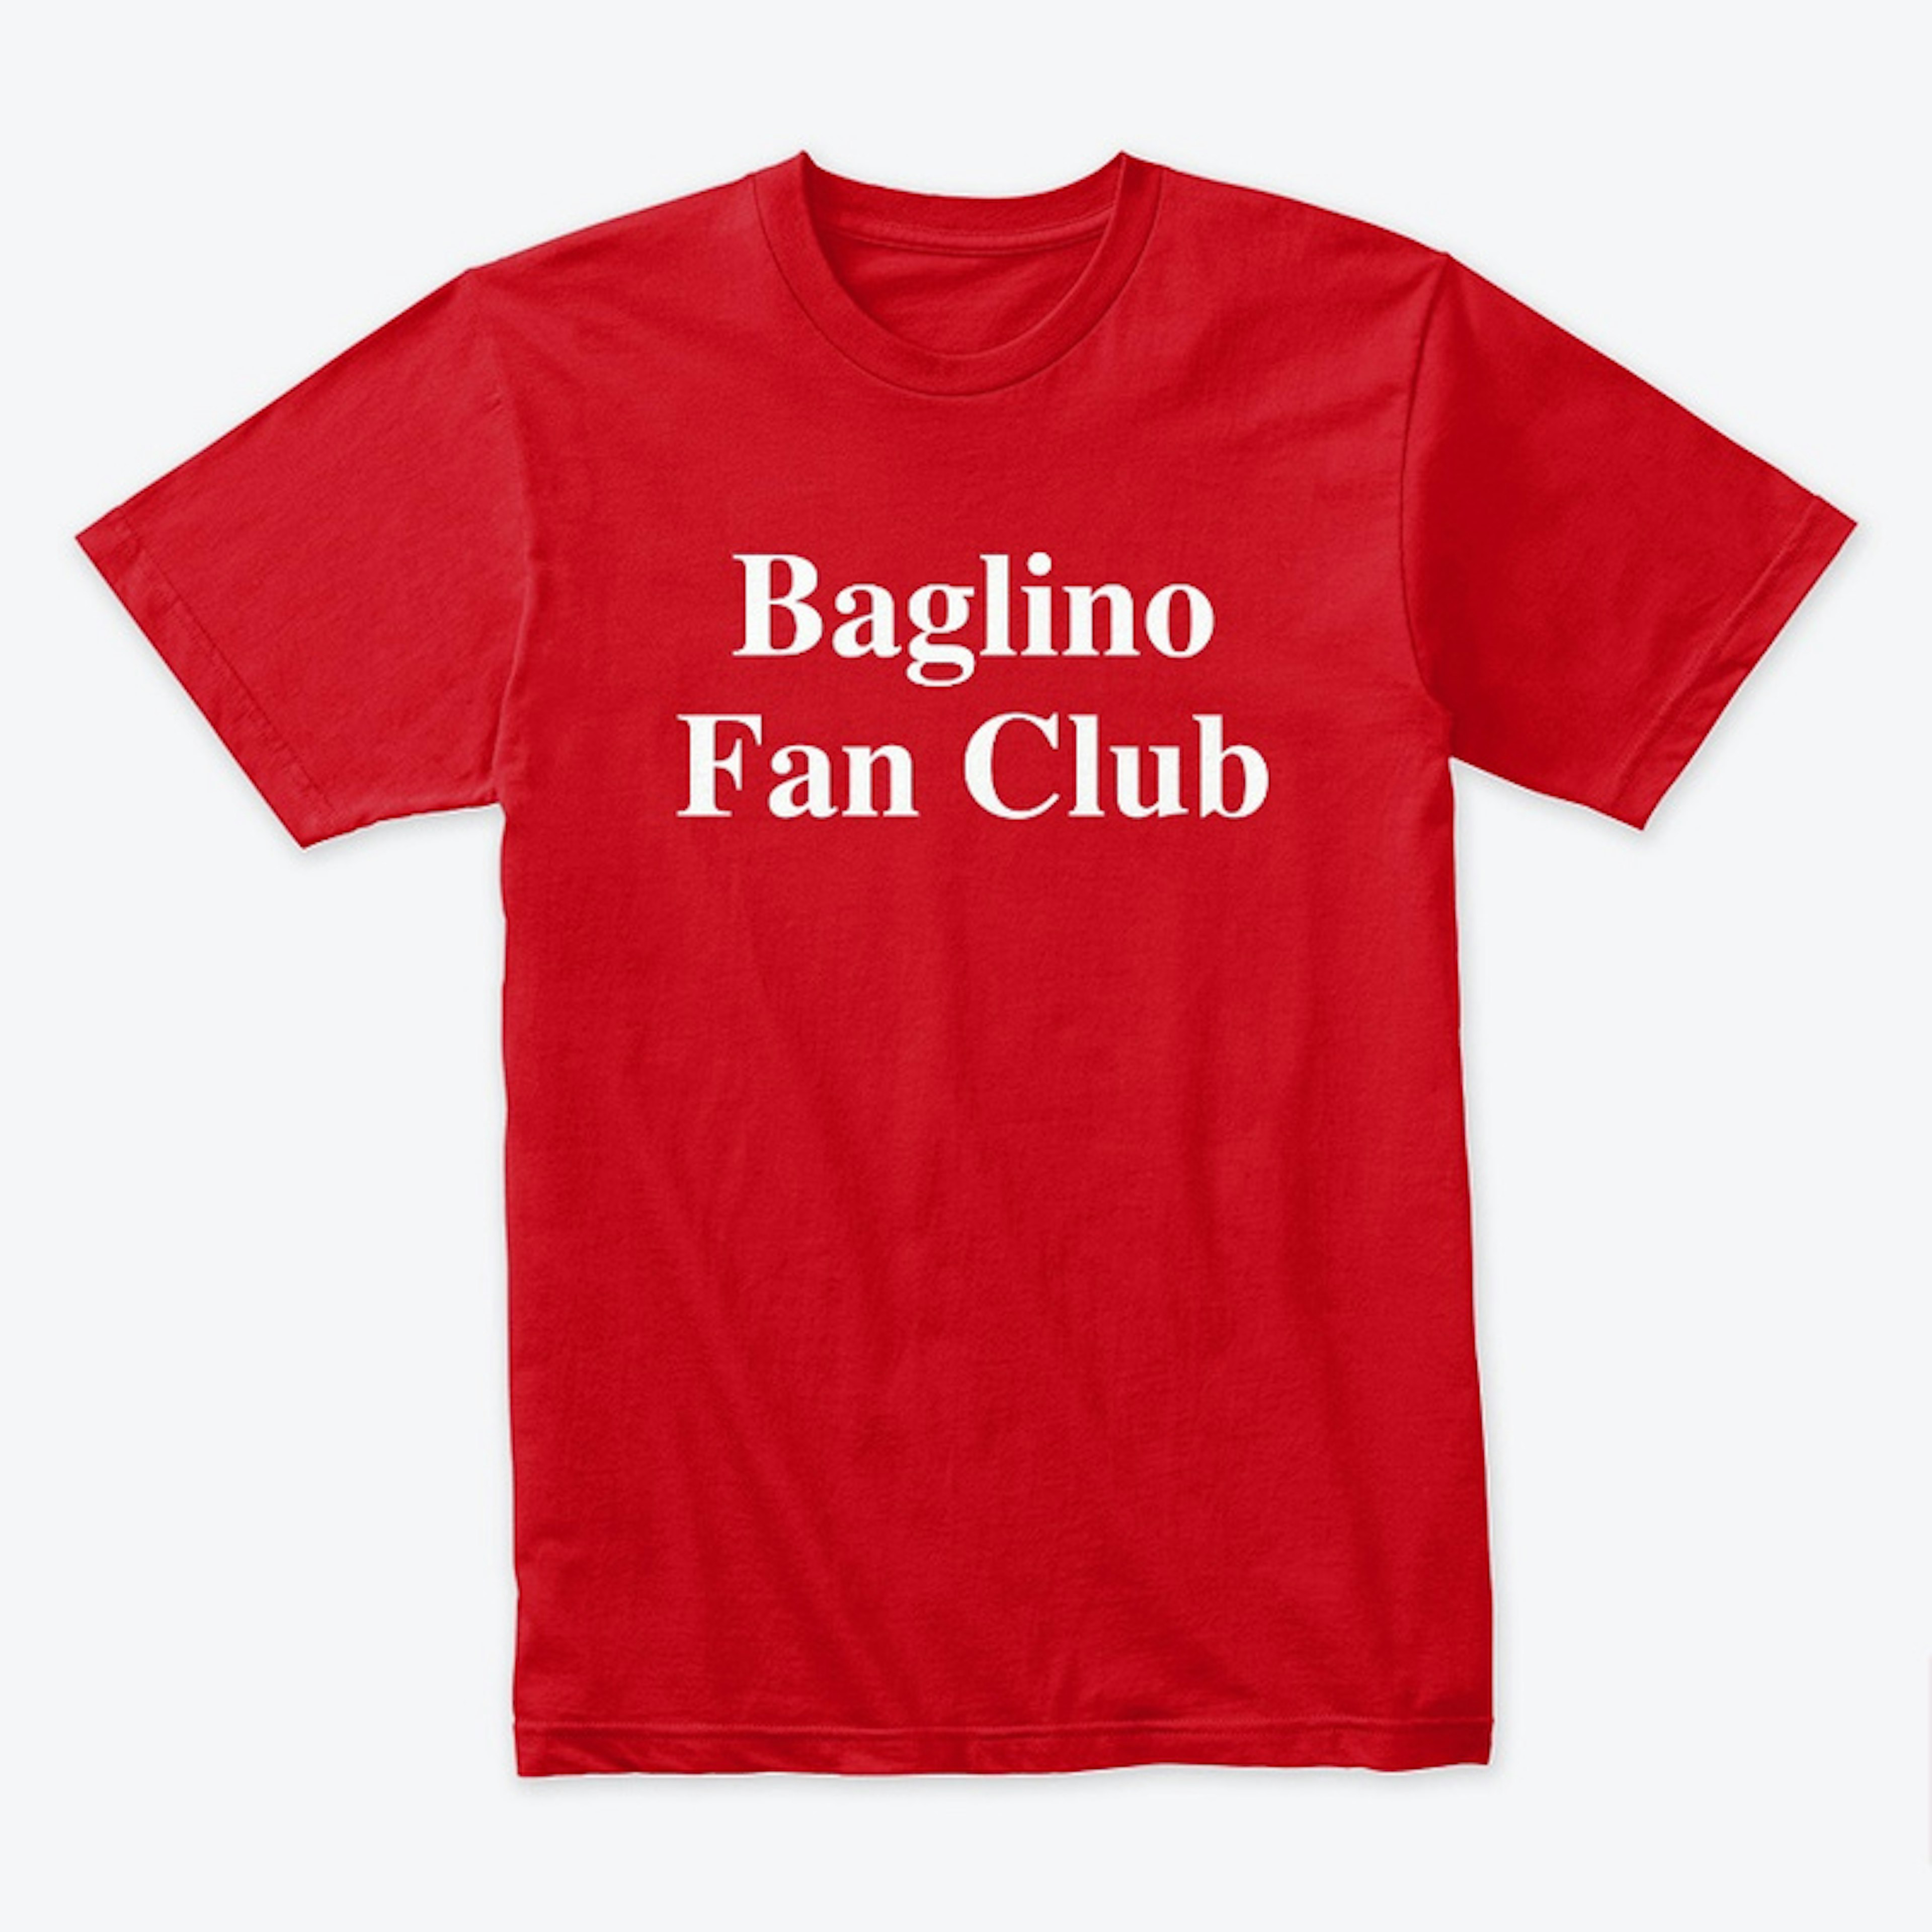 Baglino Fan Club